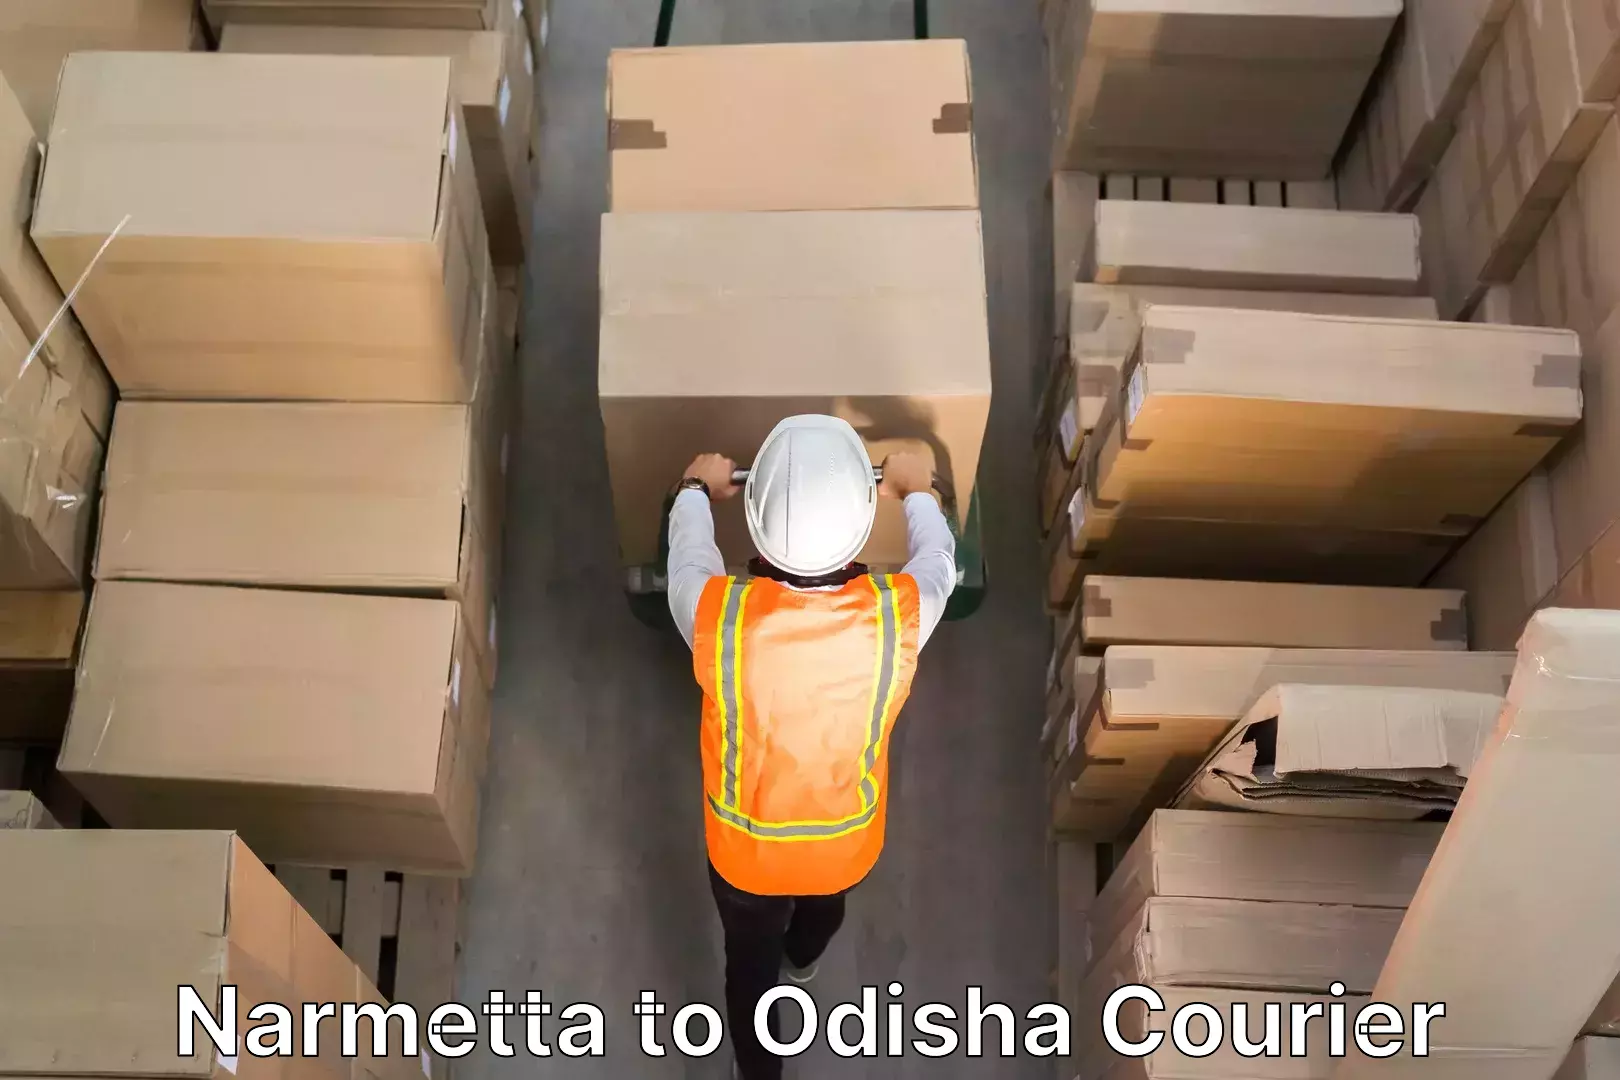 Furniture delivery service Narmetta to Odisha